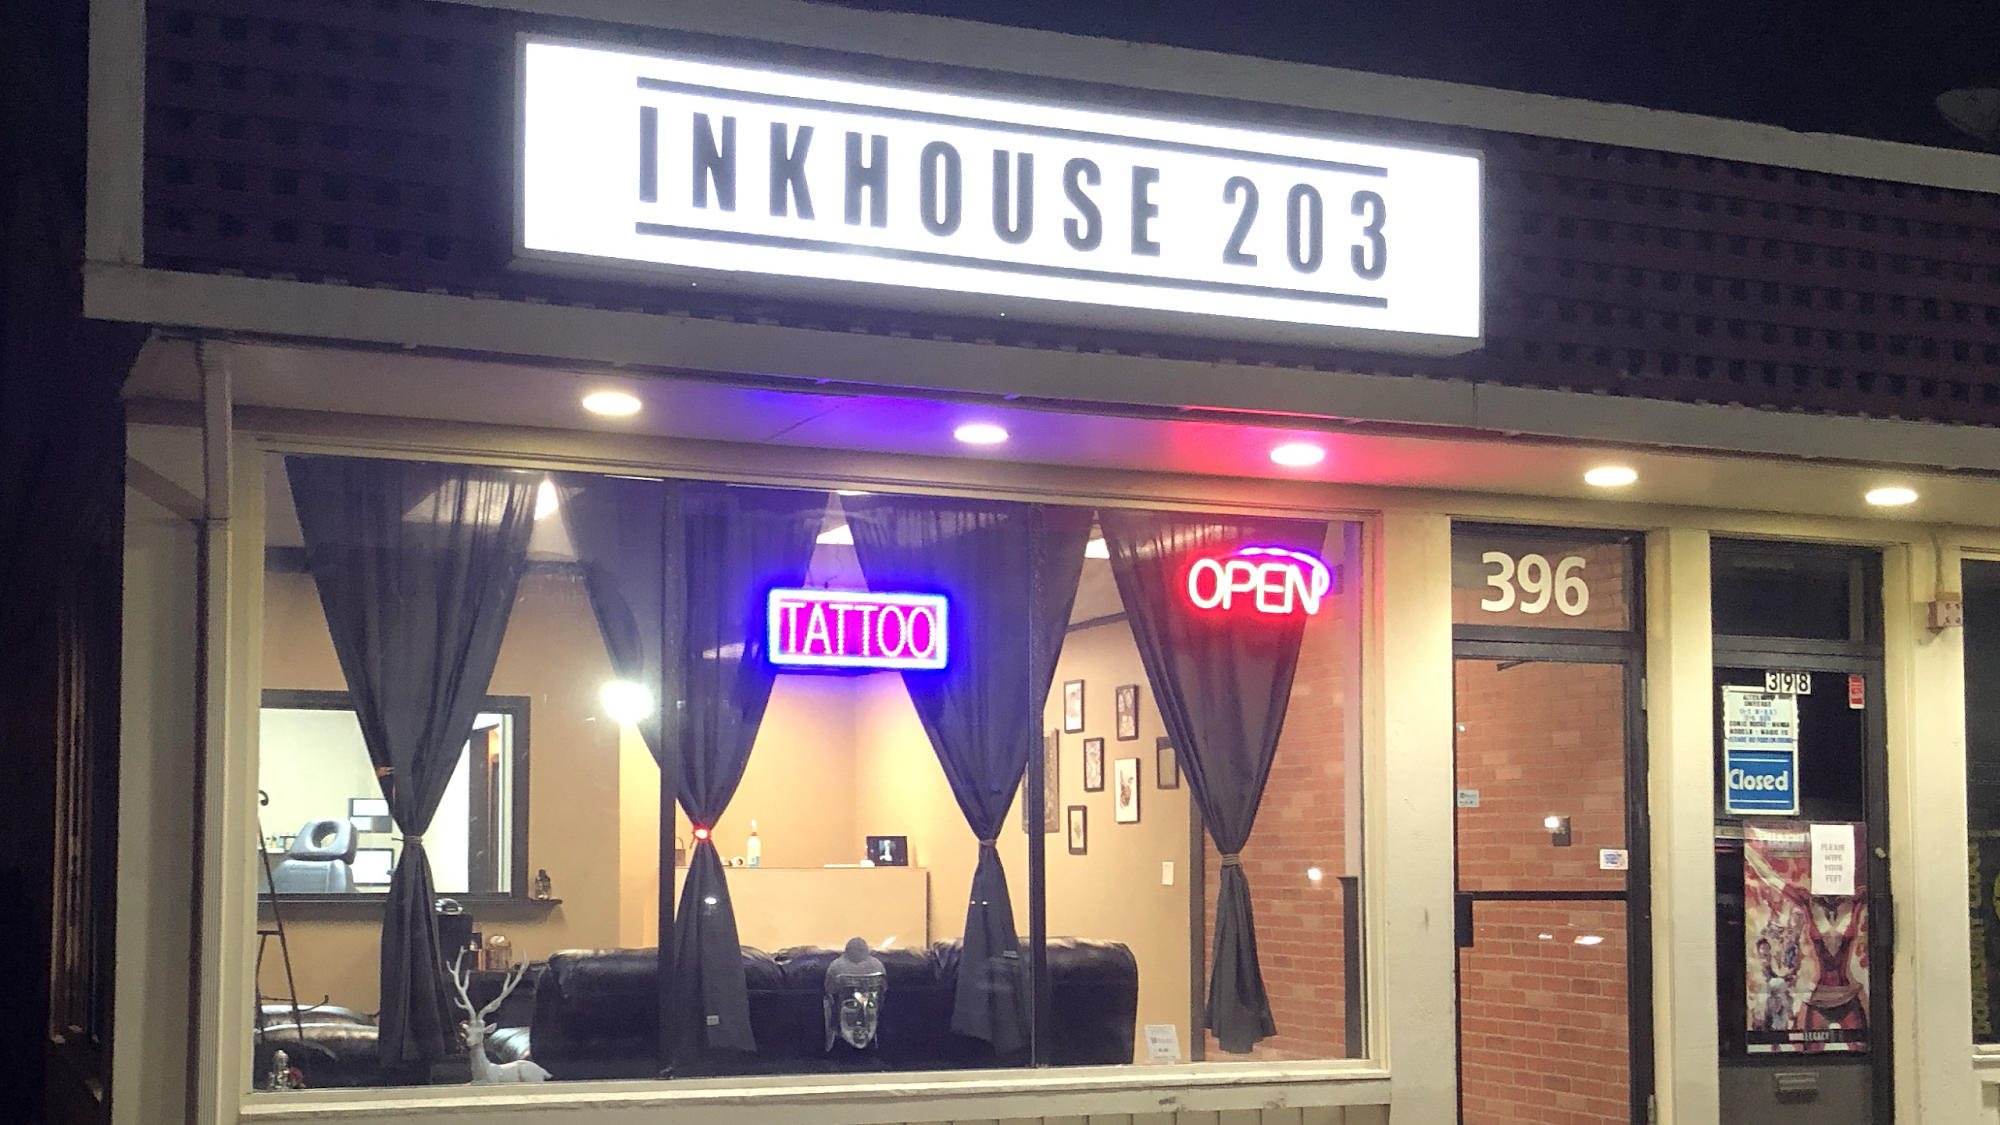 Inkhouse 203